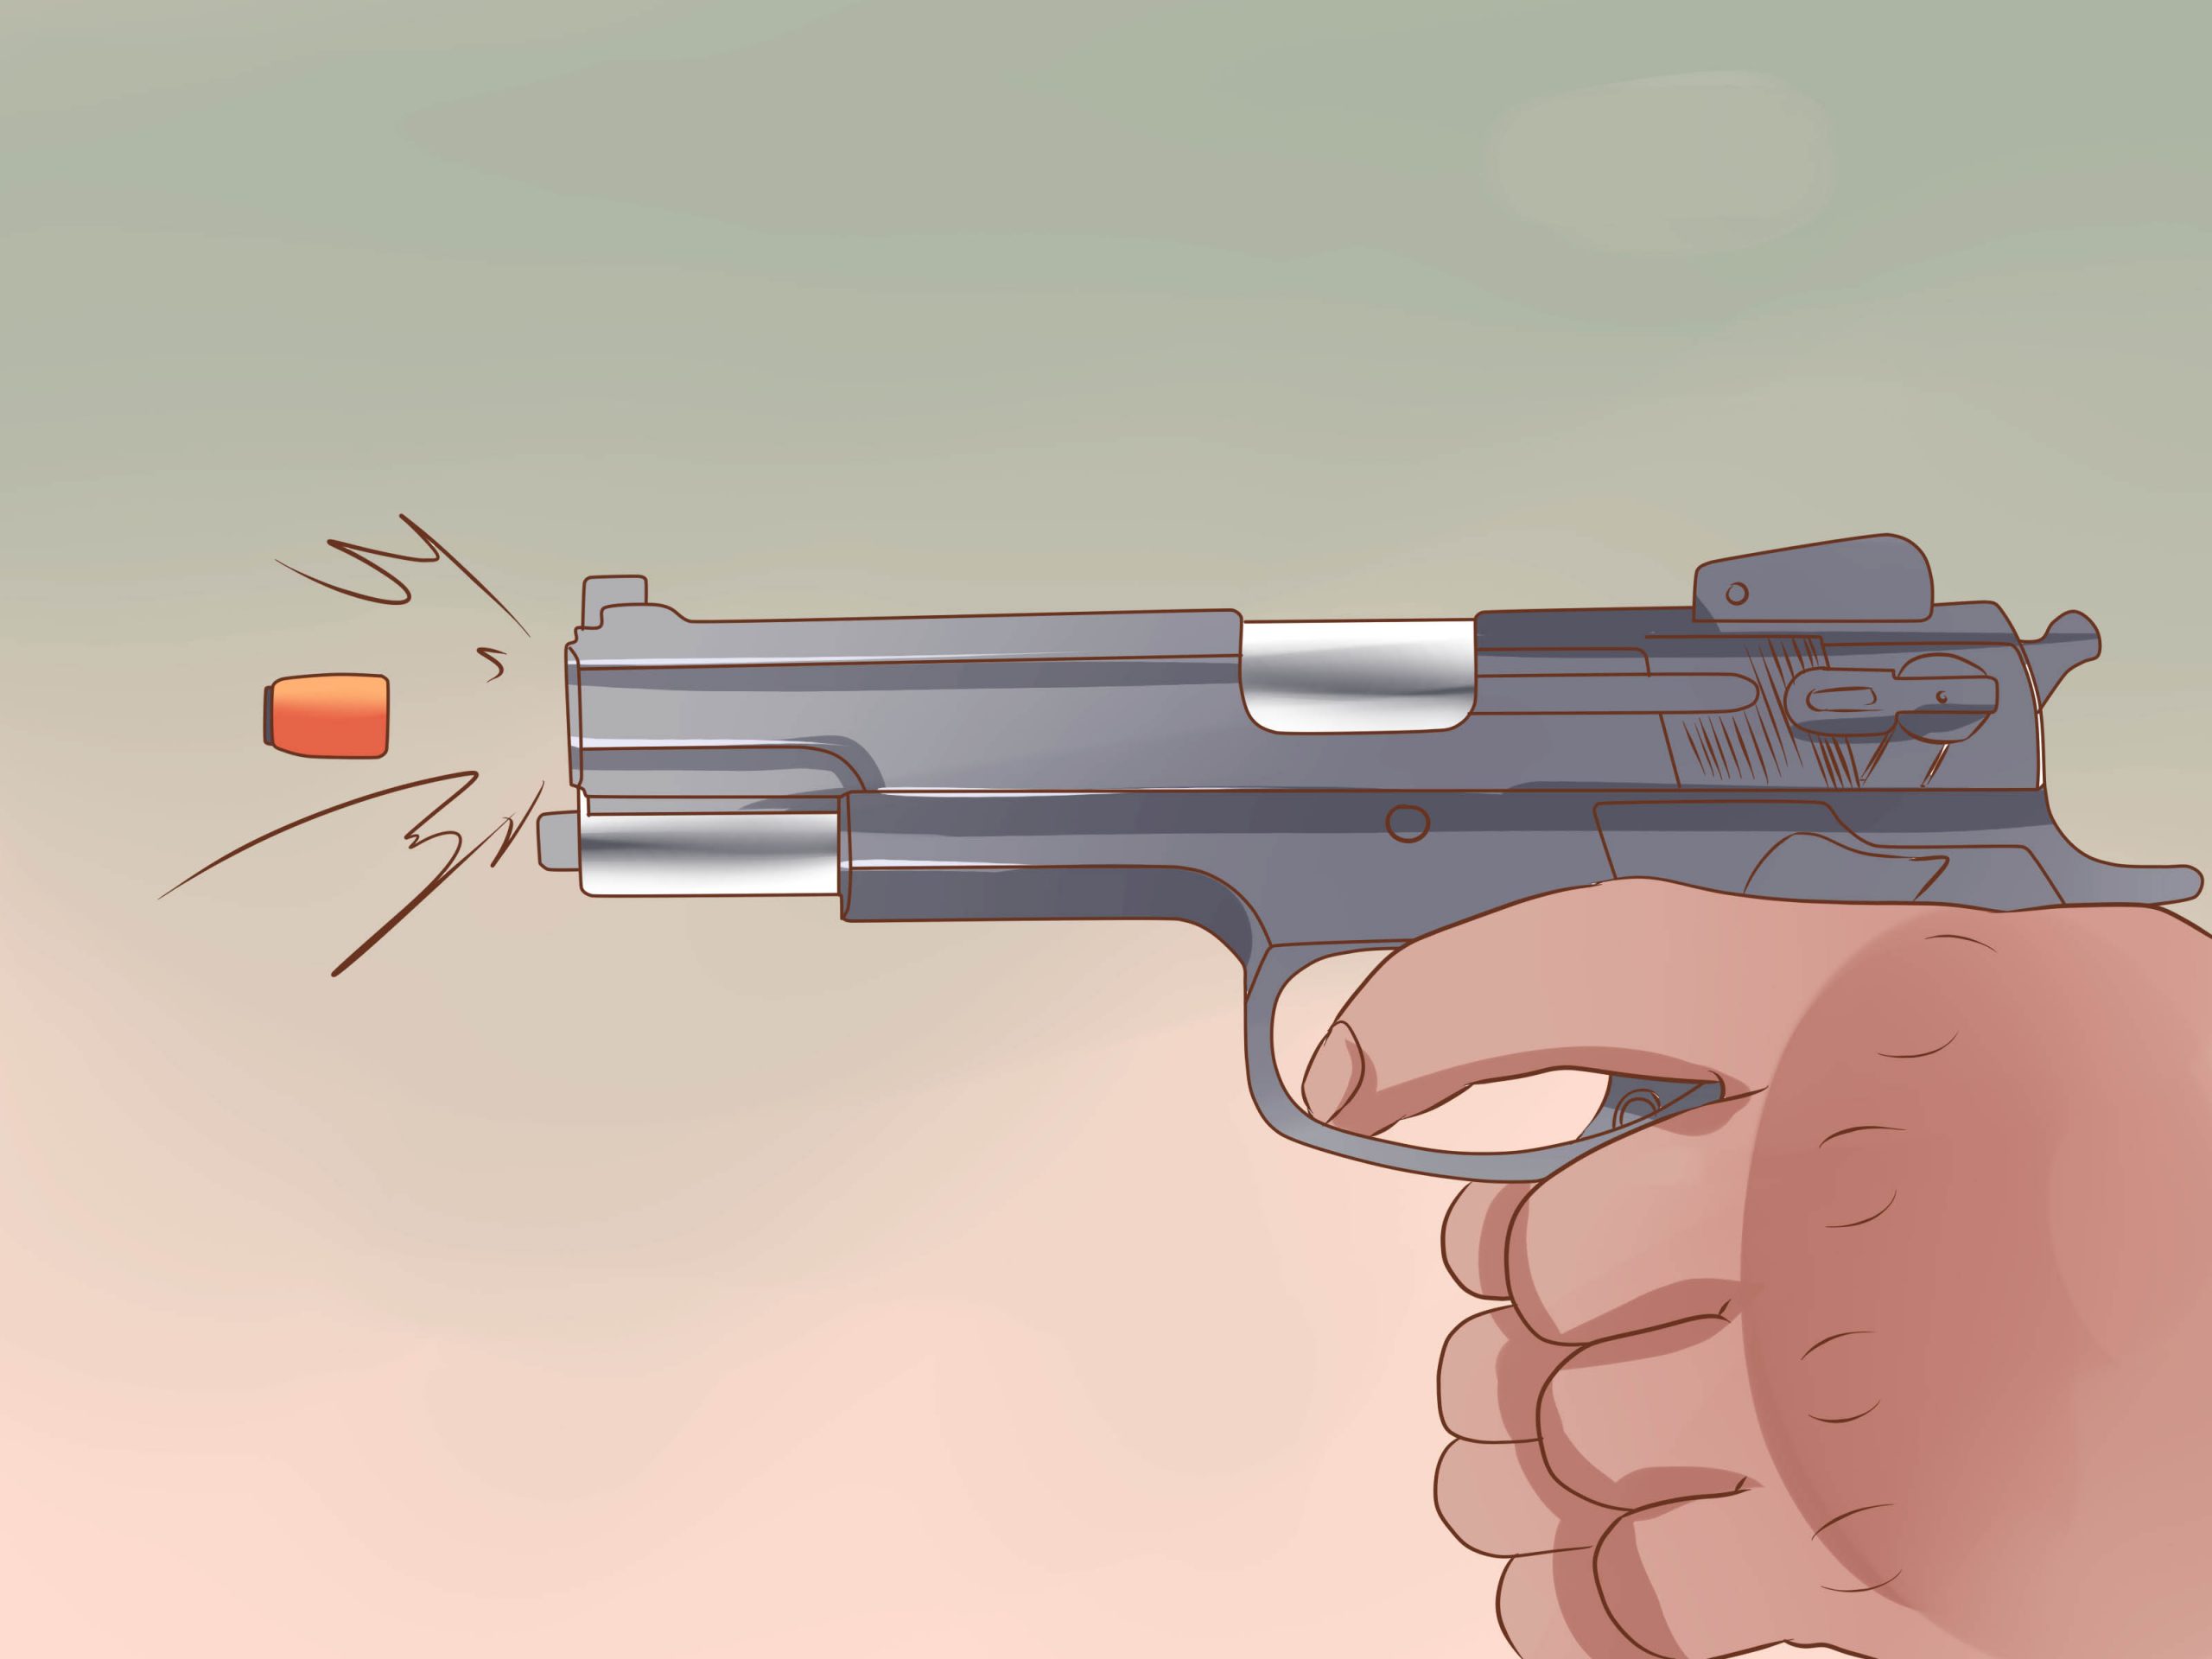 Comment Viser Avec Un Pistolet: 13 Étapes (Avec Images) concernant Comment Dessiner Un Fusil